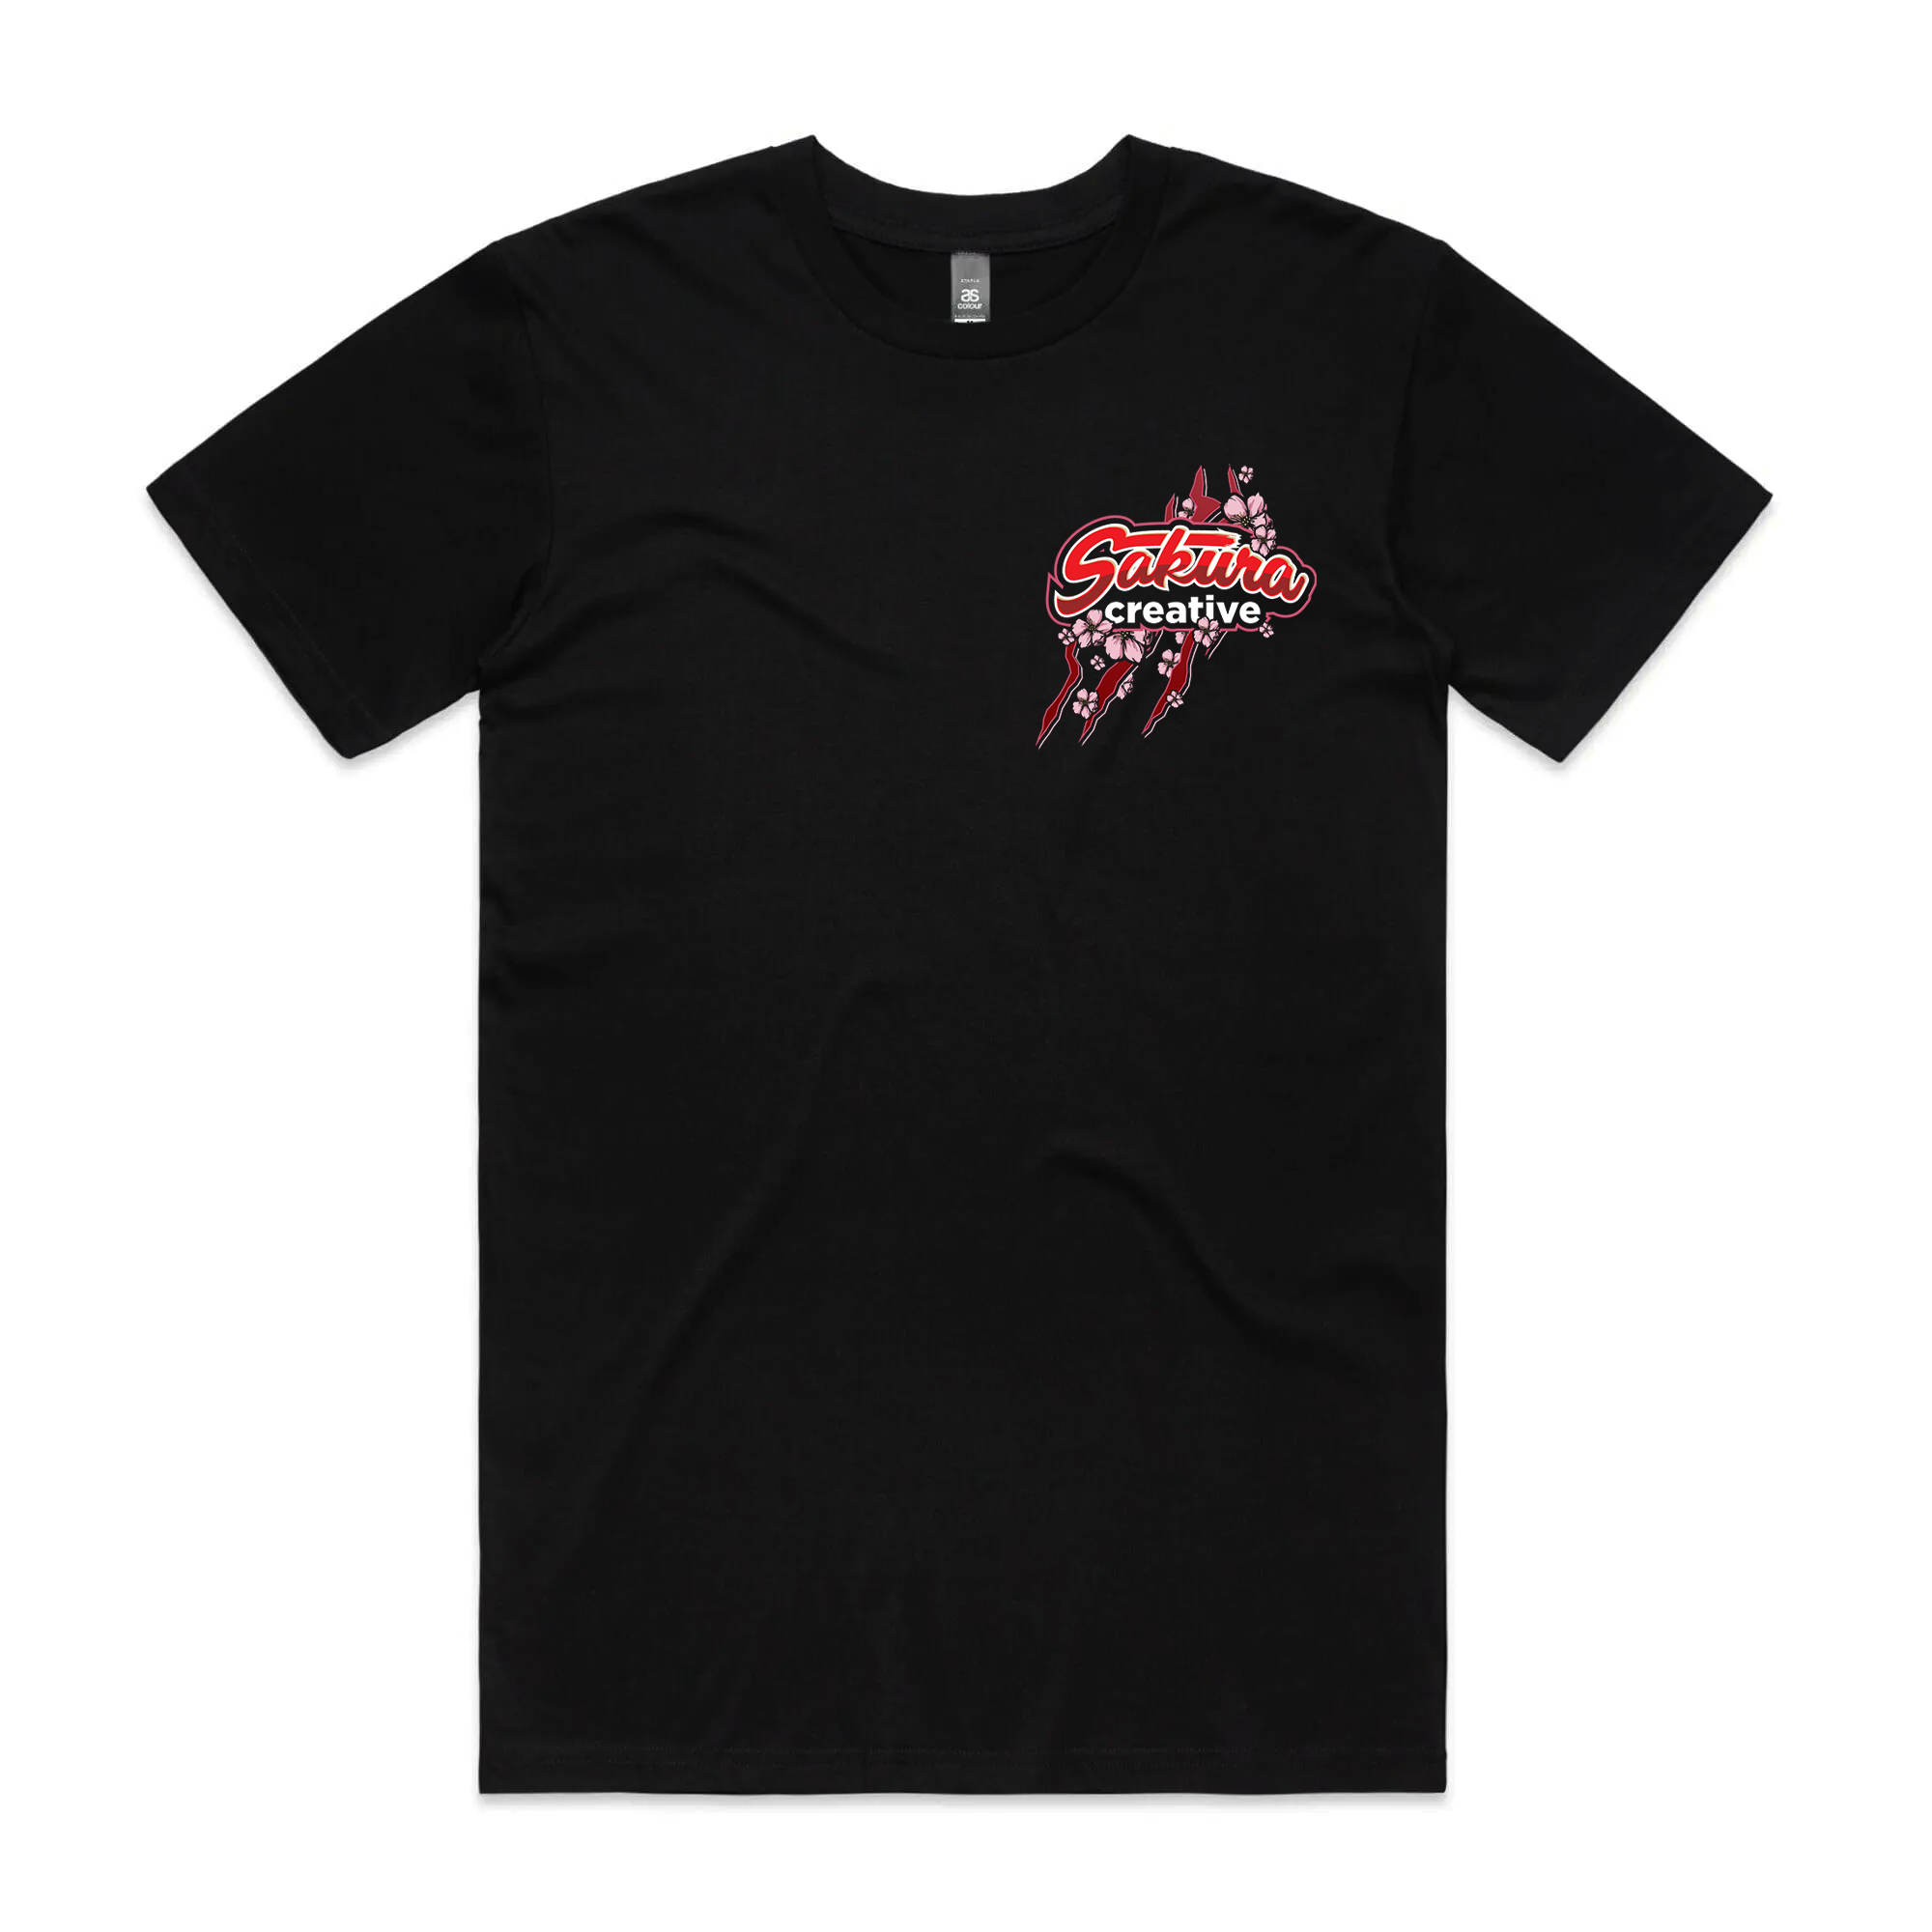 Silvia Build - Sakura Creative Shirt (Preorder)